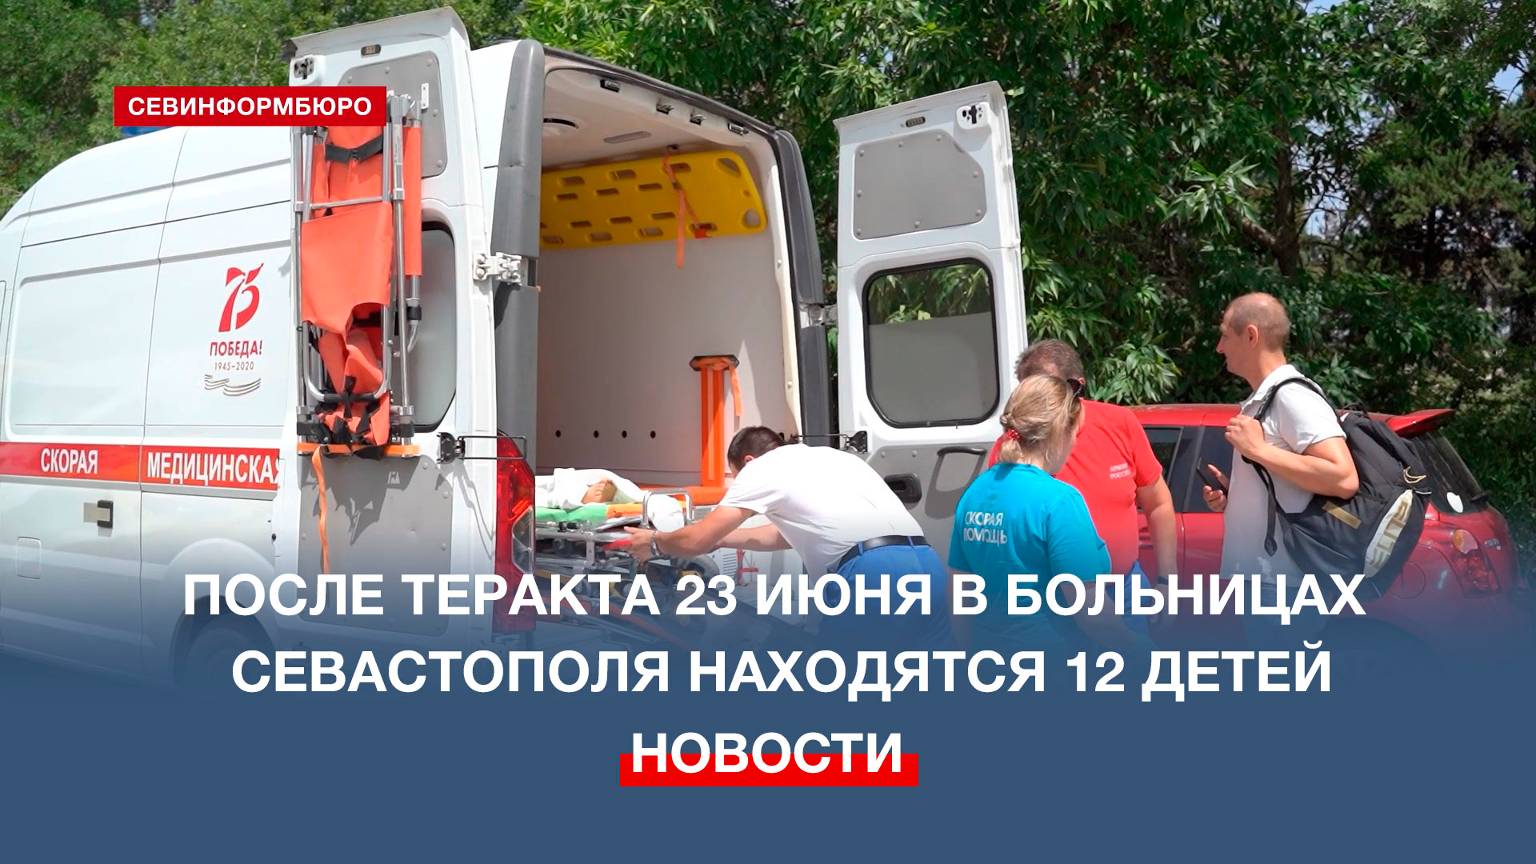 В севастопольских больницах находятся 12 детей с осколочными ранениями